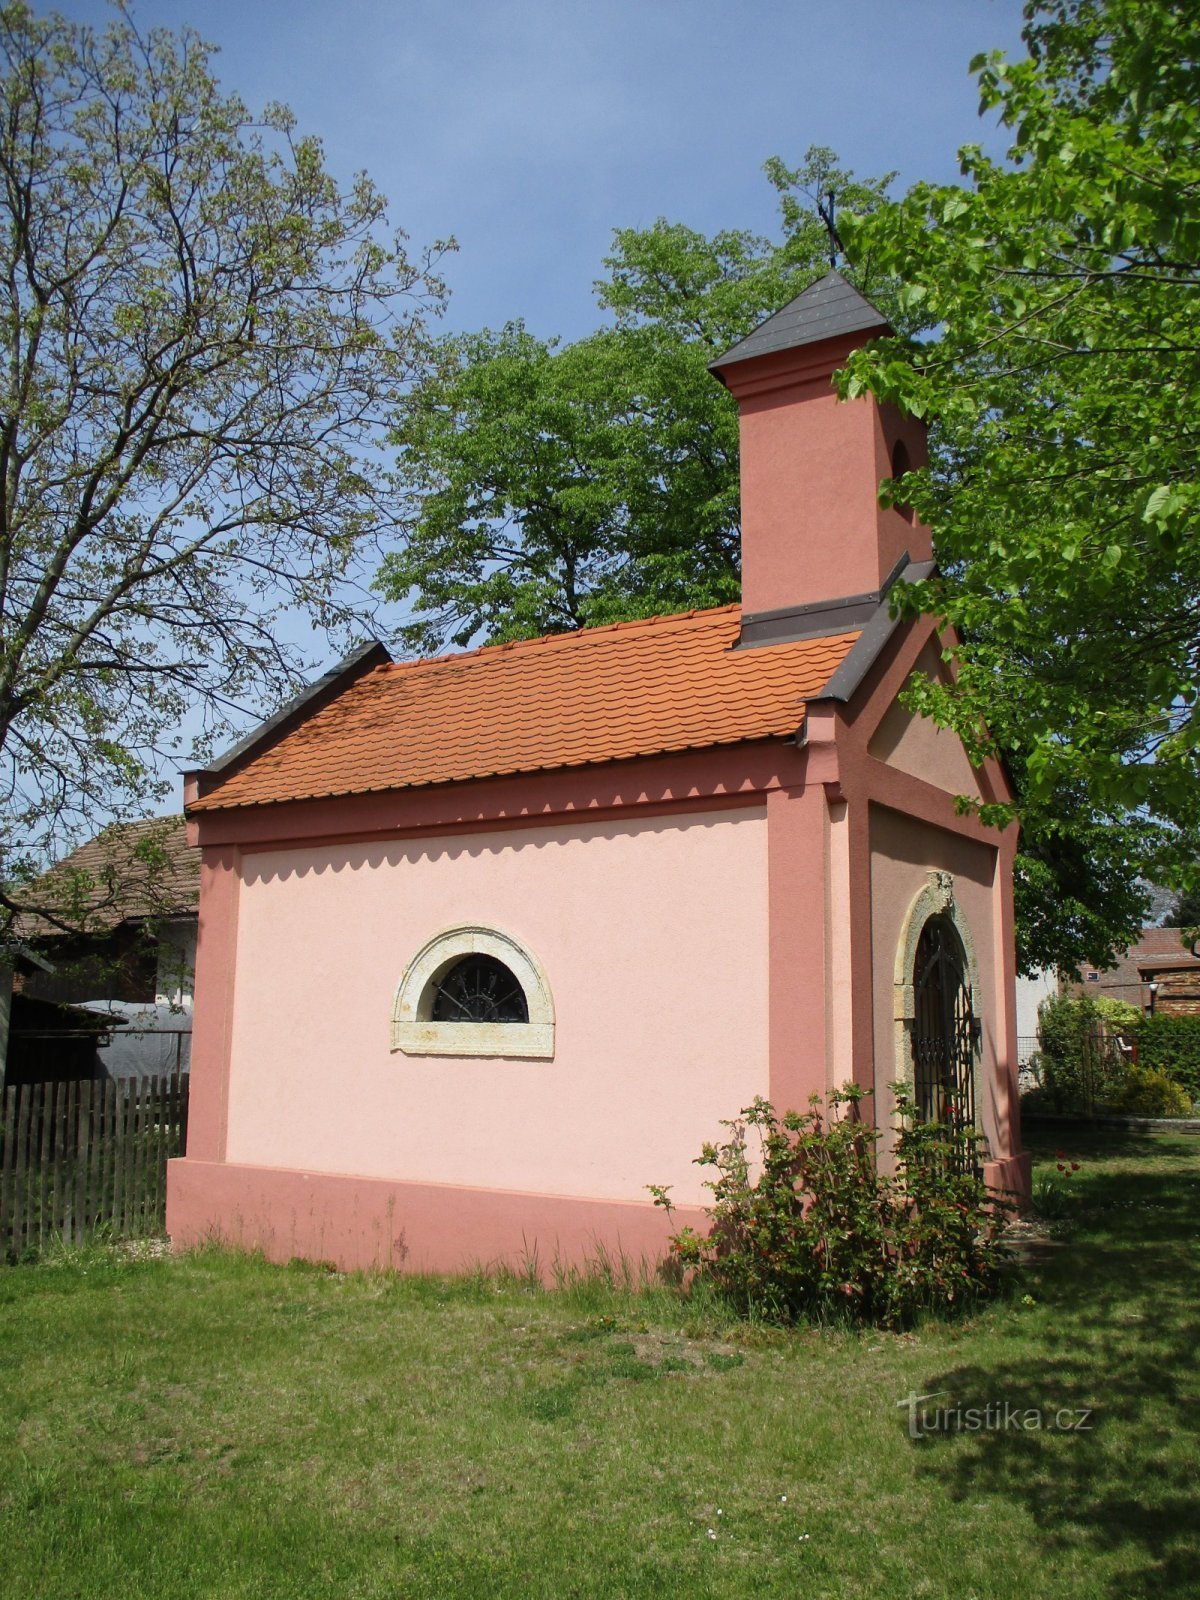 礼拝堂 (Kunčice, 8.5.2020/XNUMX/XNUMX)